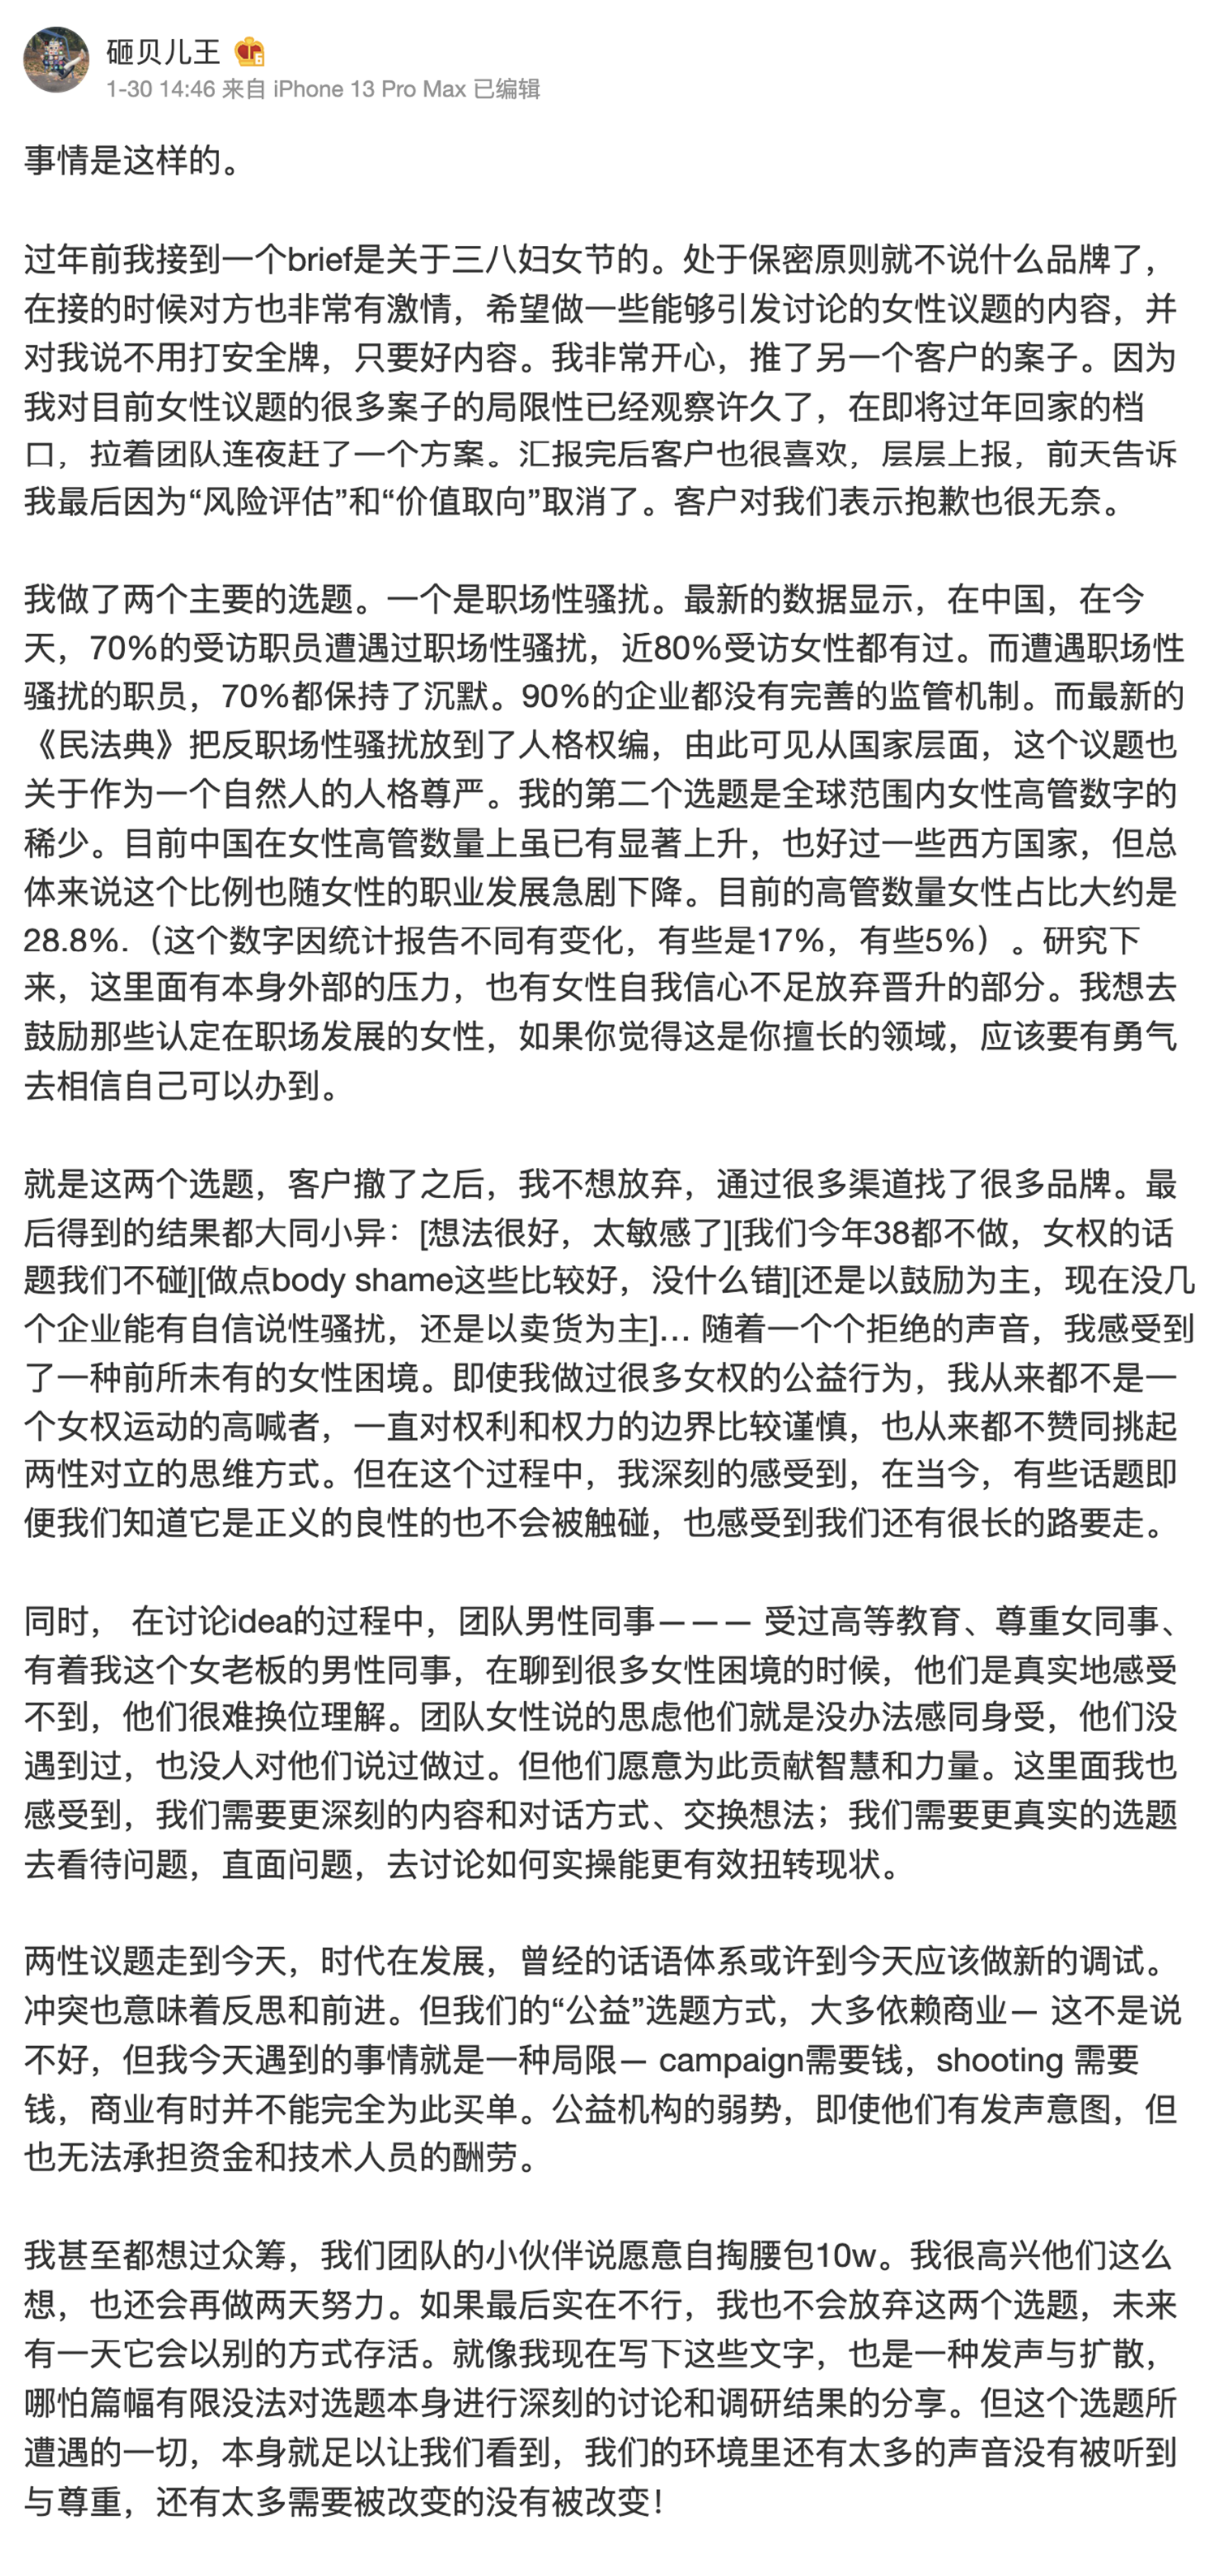 原文链接 https://m.weibo.cn/status/4731349997456236
永久链接 https://archive.ph/st7Xy